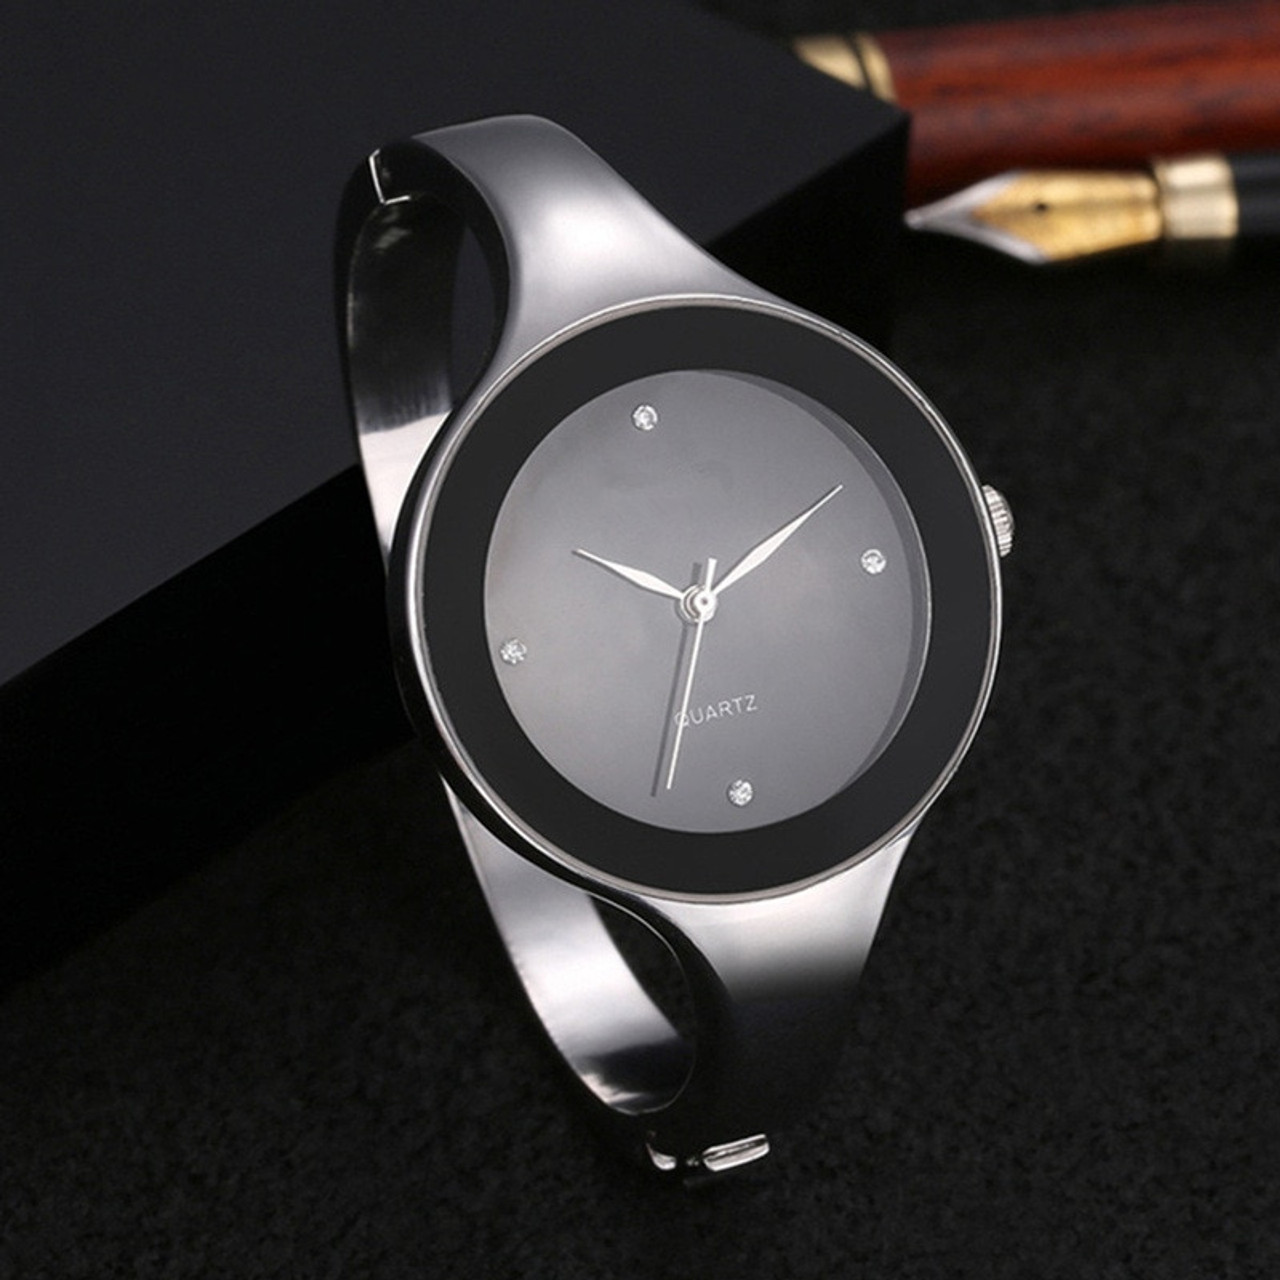 wrist watch design